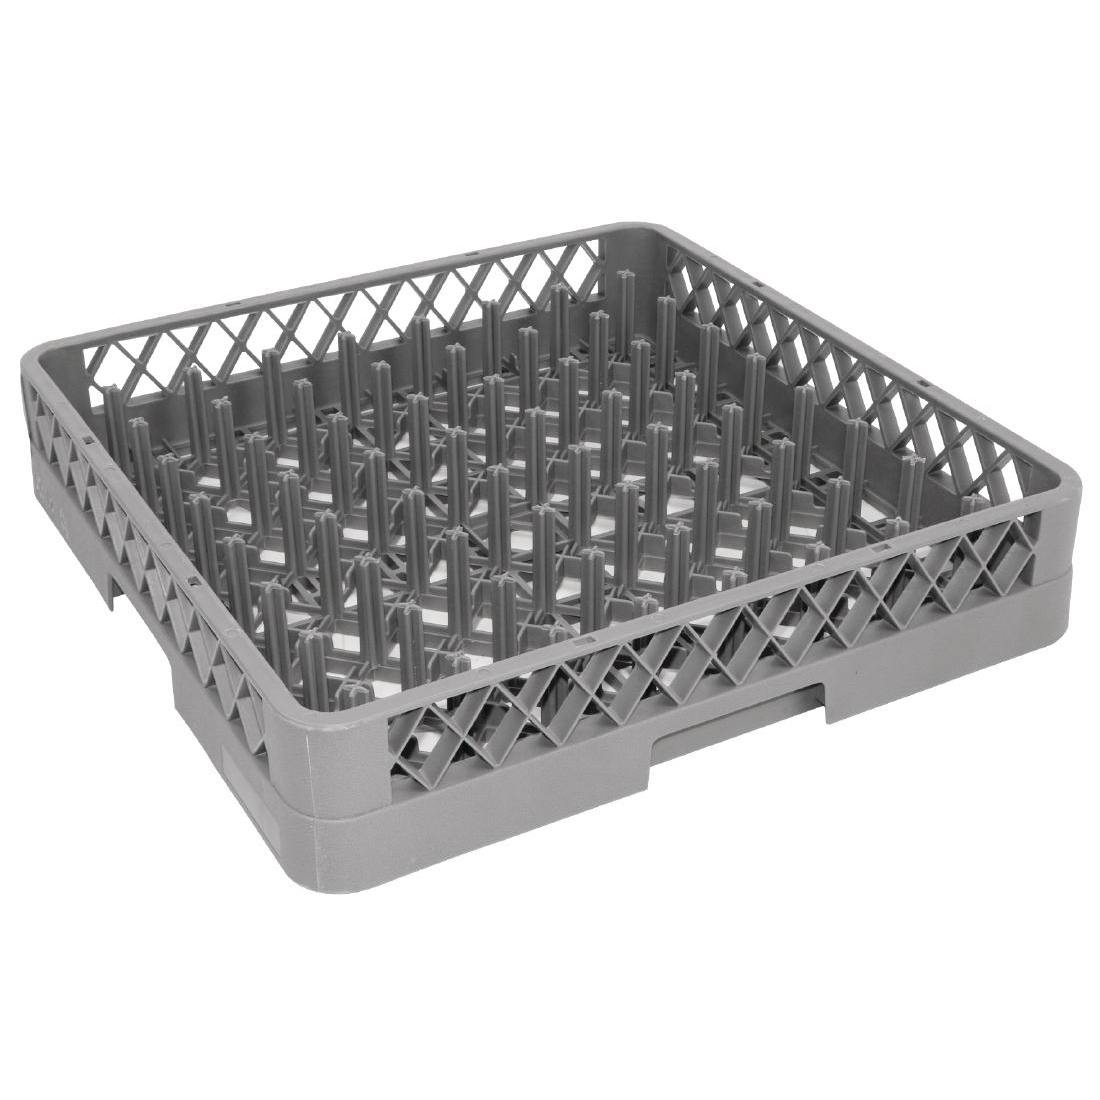 Vogue K909 500 x 500mm Spiked Dishwasher Basket - CK0444